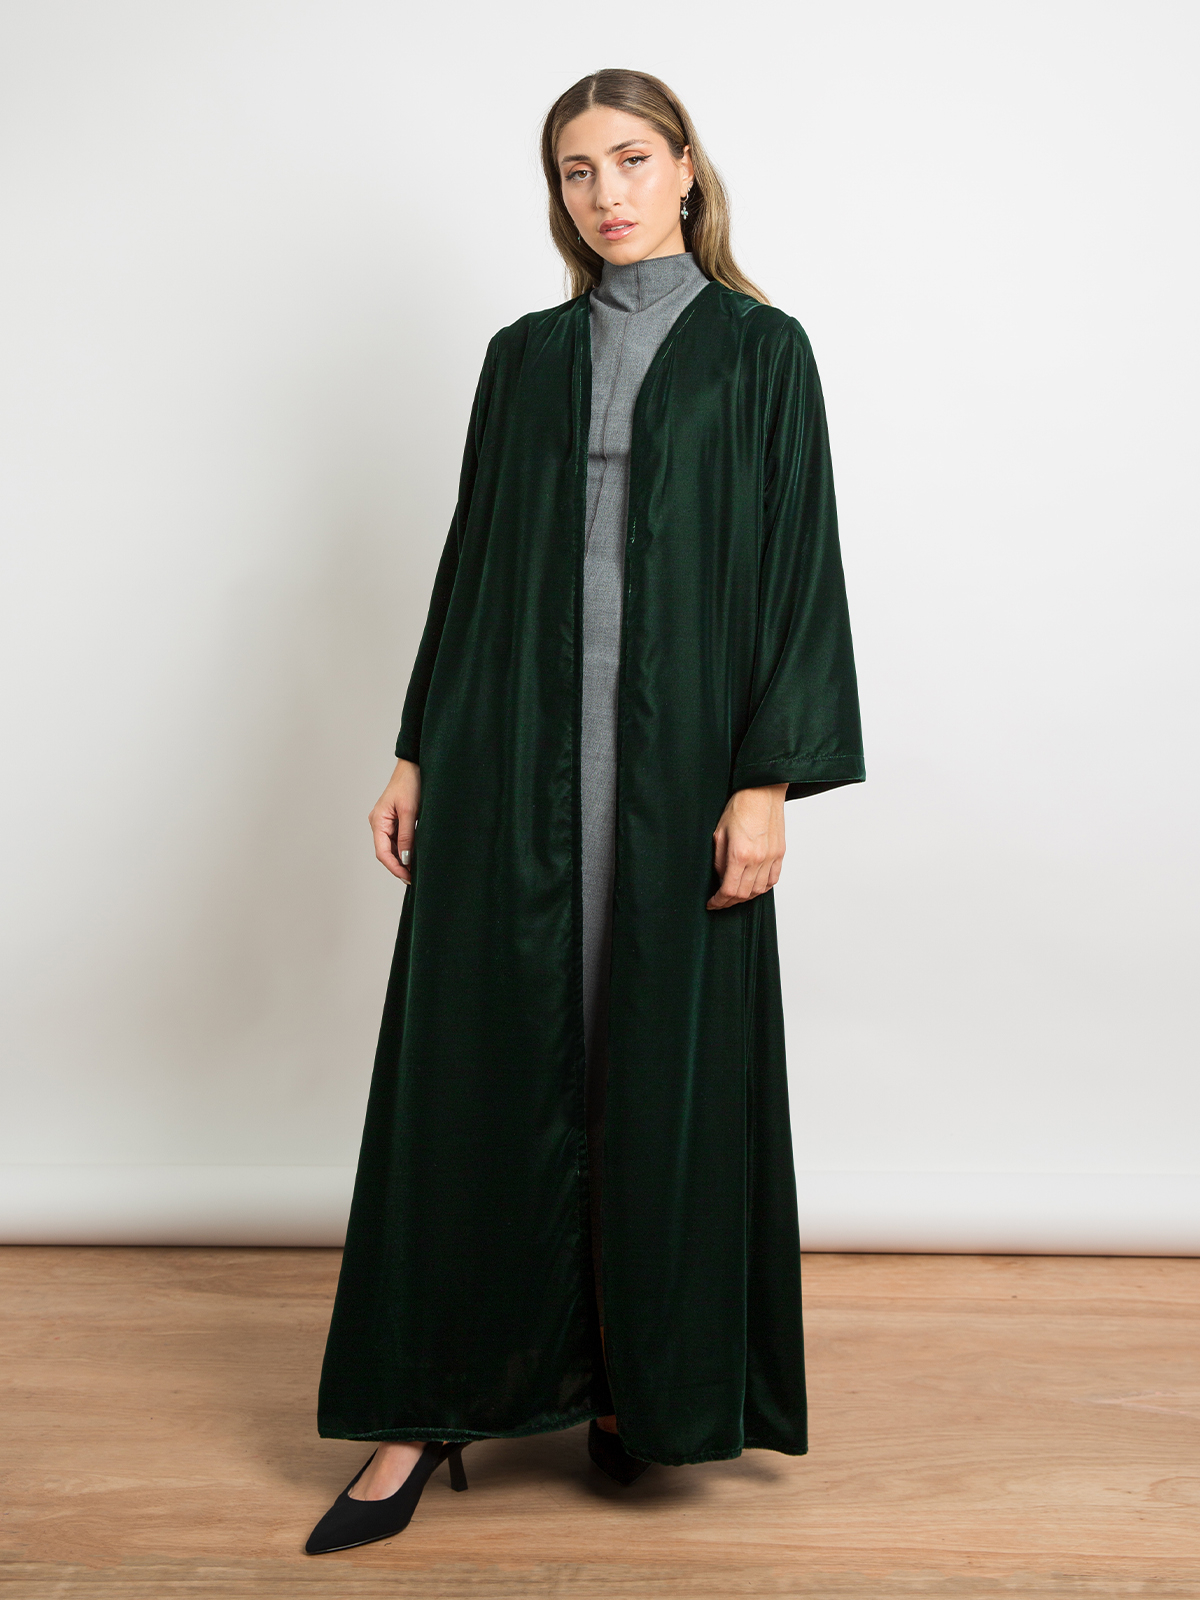 Green - A Cut Long Open Half Cloche Abaya in Velvet